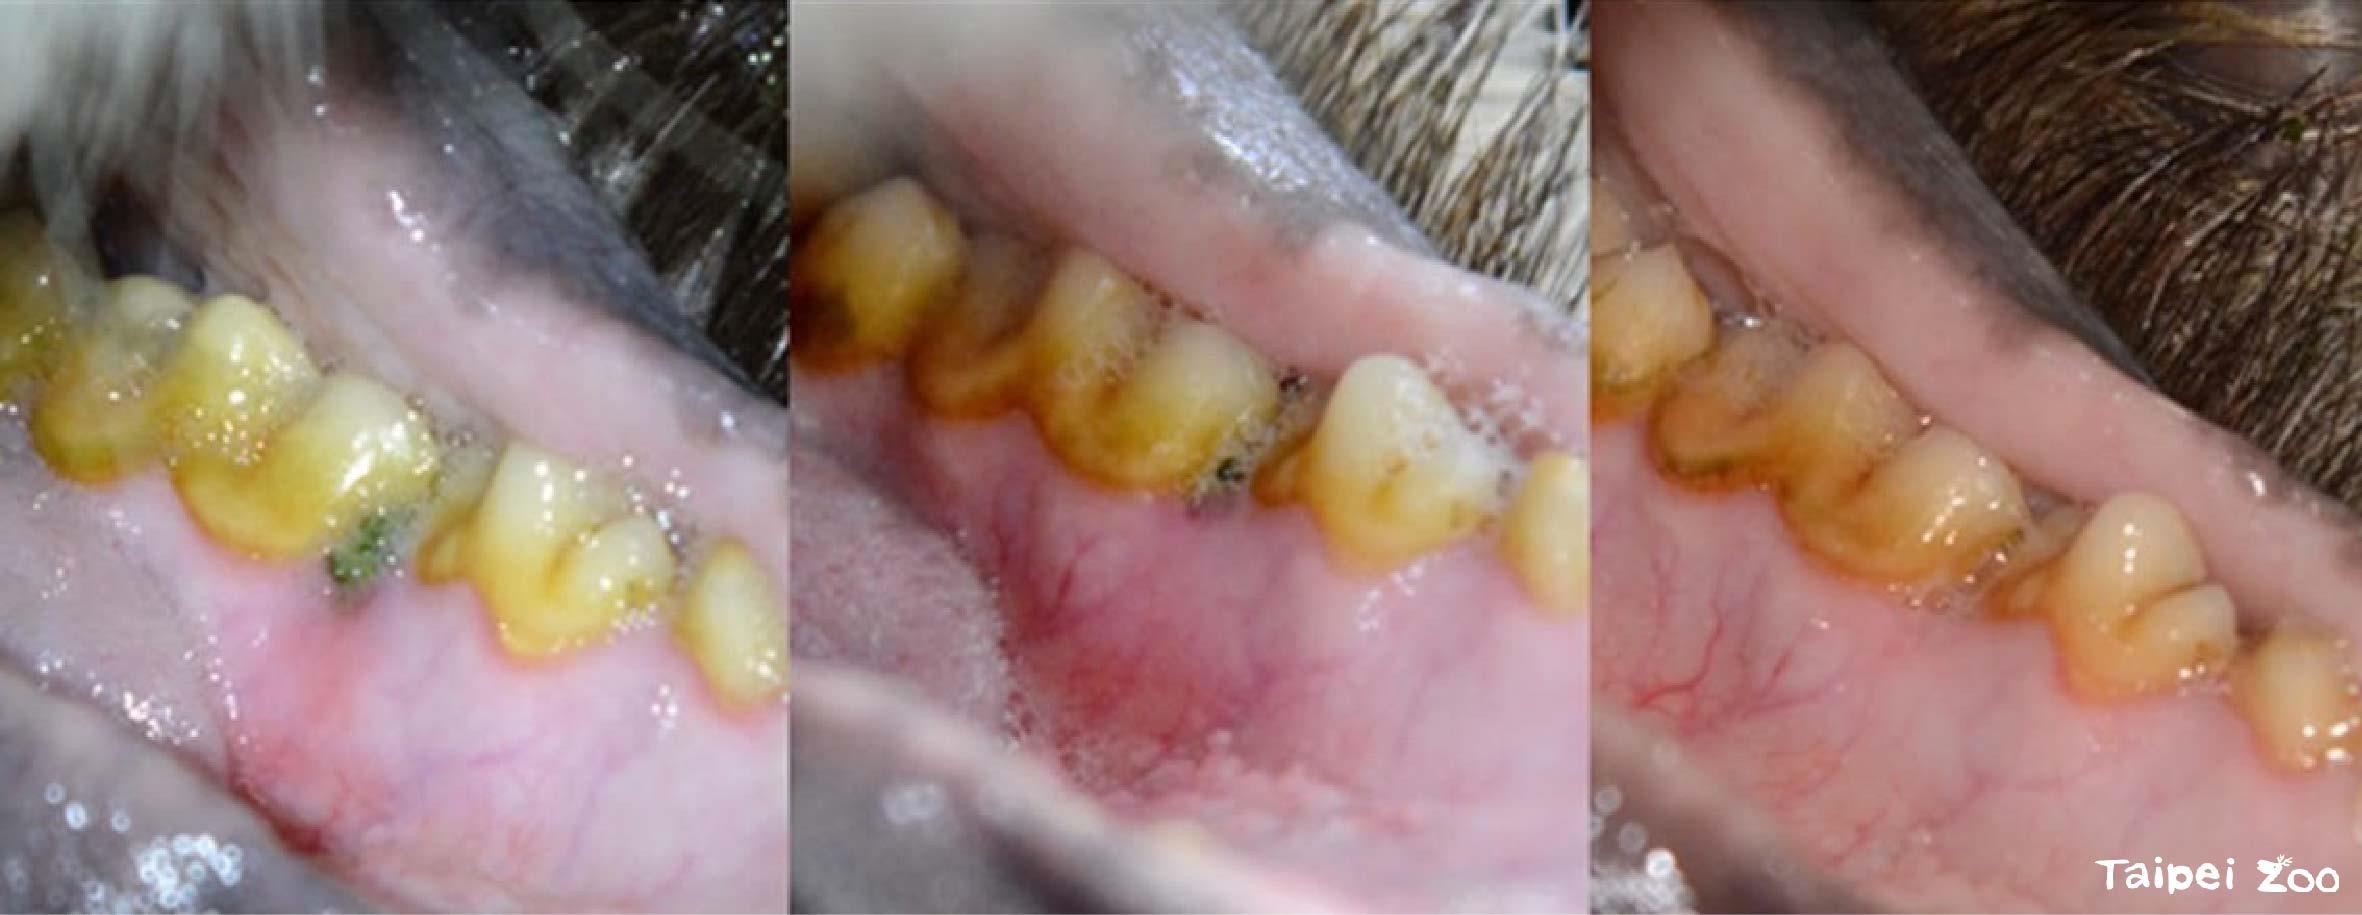 圖2、大貓熊圓圓牙齦形成牙周囊袋，導致食物殘渣持續卡入囊袋(圖中綠色區域)造成局部發炎，於首次手術移除殘渣後仍不見改善。經過後續兩次手術降低牙周囊袋高度，並移除部分結締組織，搭配術後短期特殊食譜護理，與日常刷牙訓練清潔，牙科專科照養上漸趨穩定。(由左至右)(1)異物使局部牙齦發炎 (2)初次手術移除後 (3)手術配合刷牙訓練後狀況改善。照片來源：本研究計畫成果報告